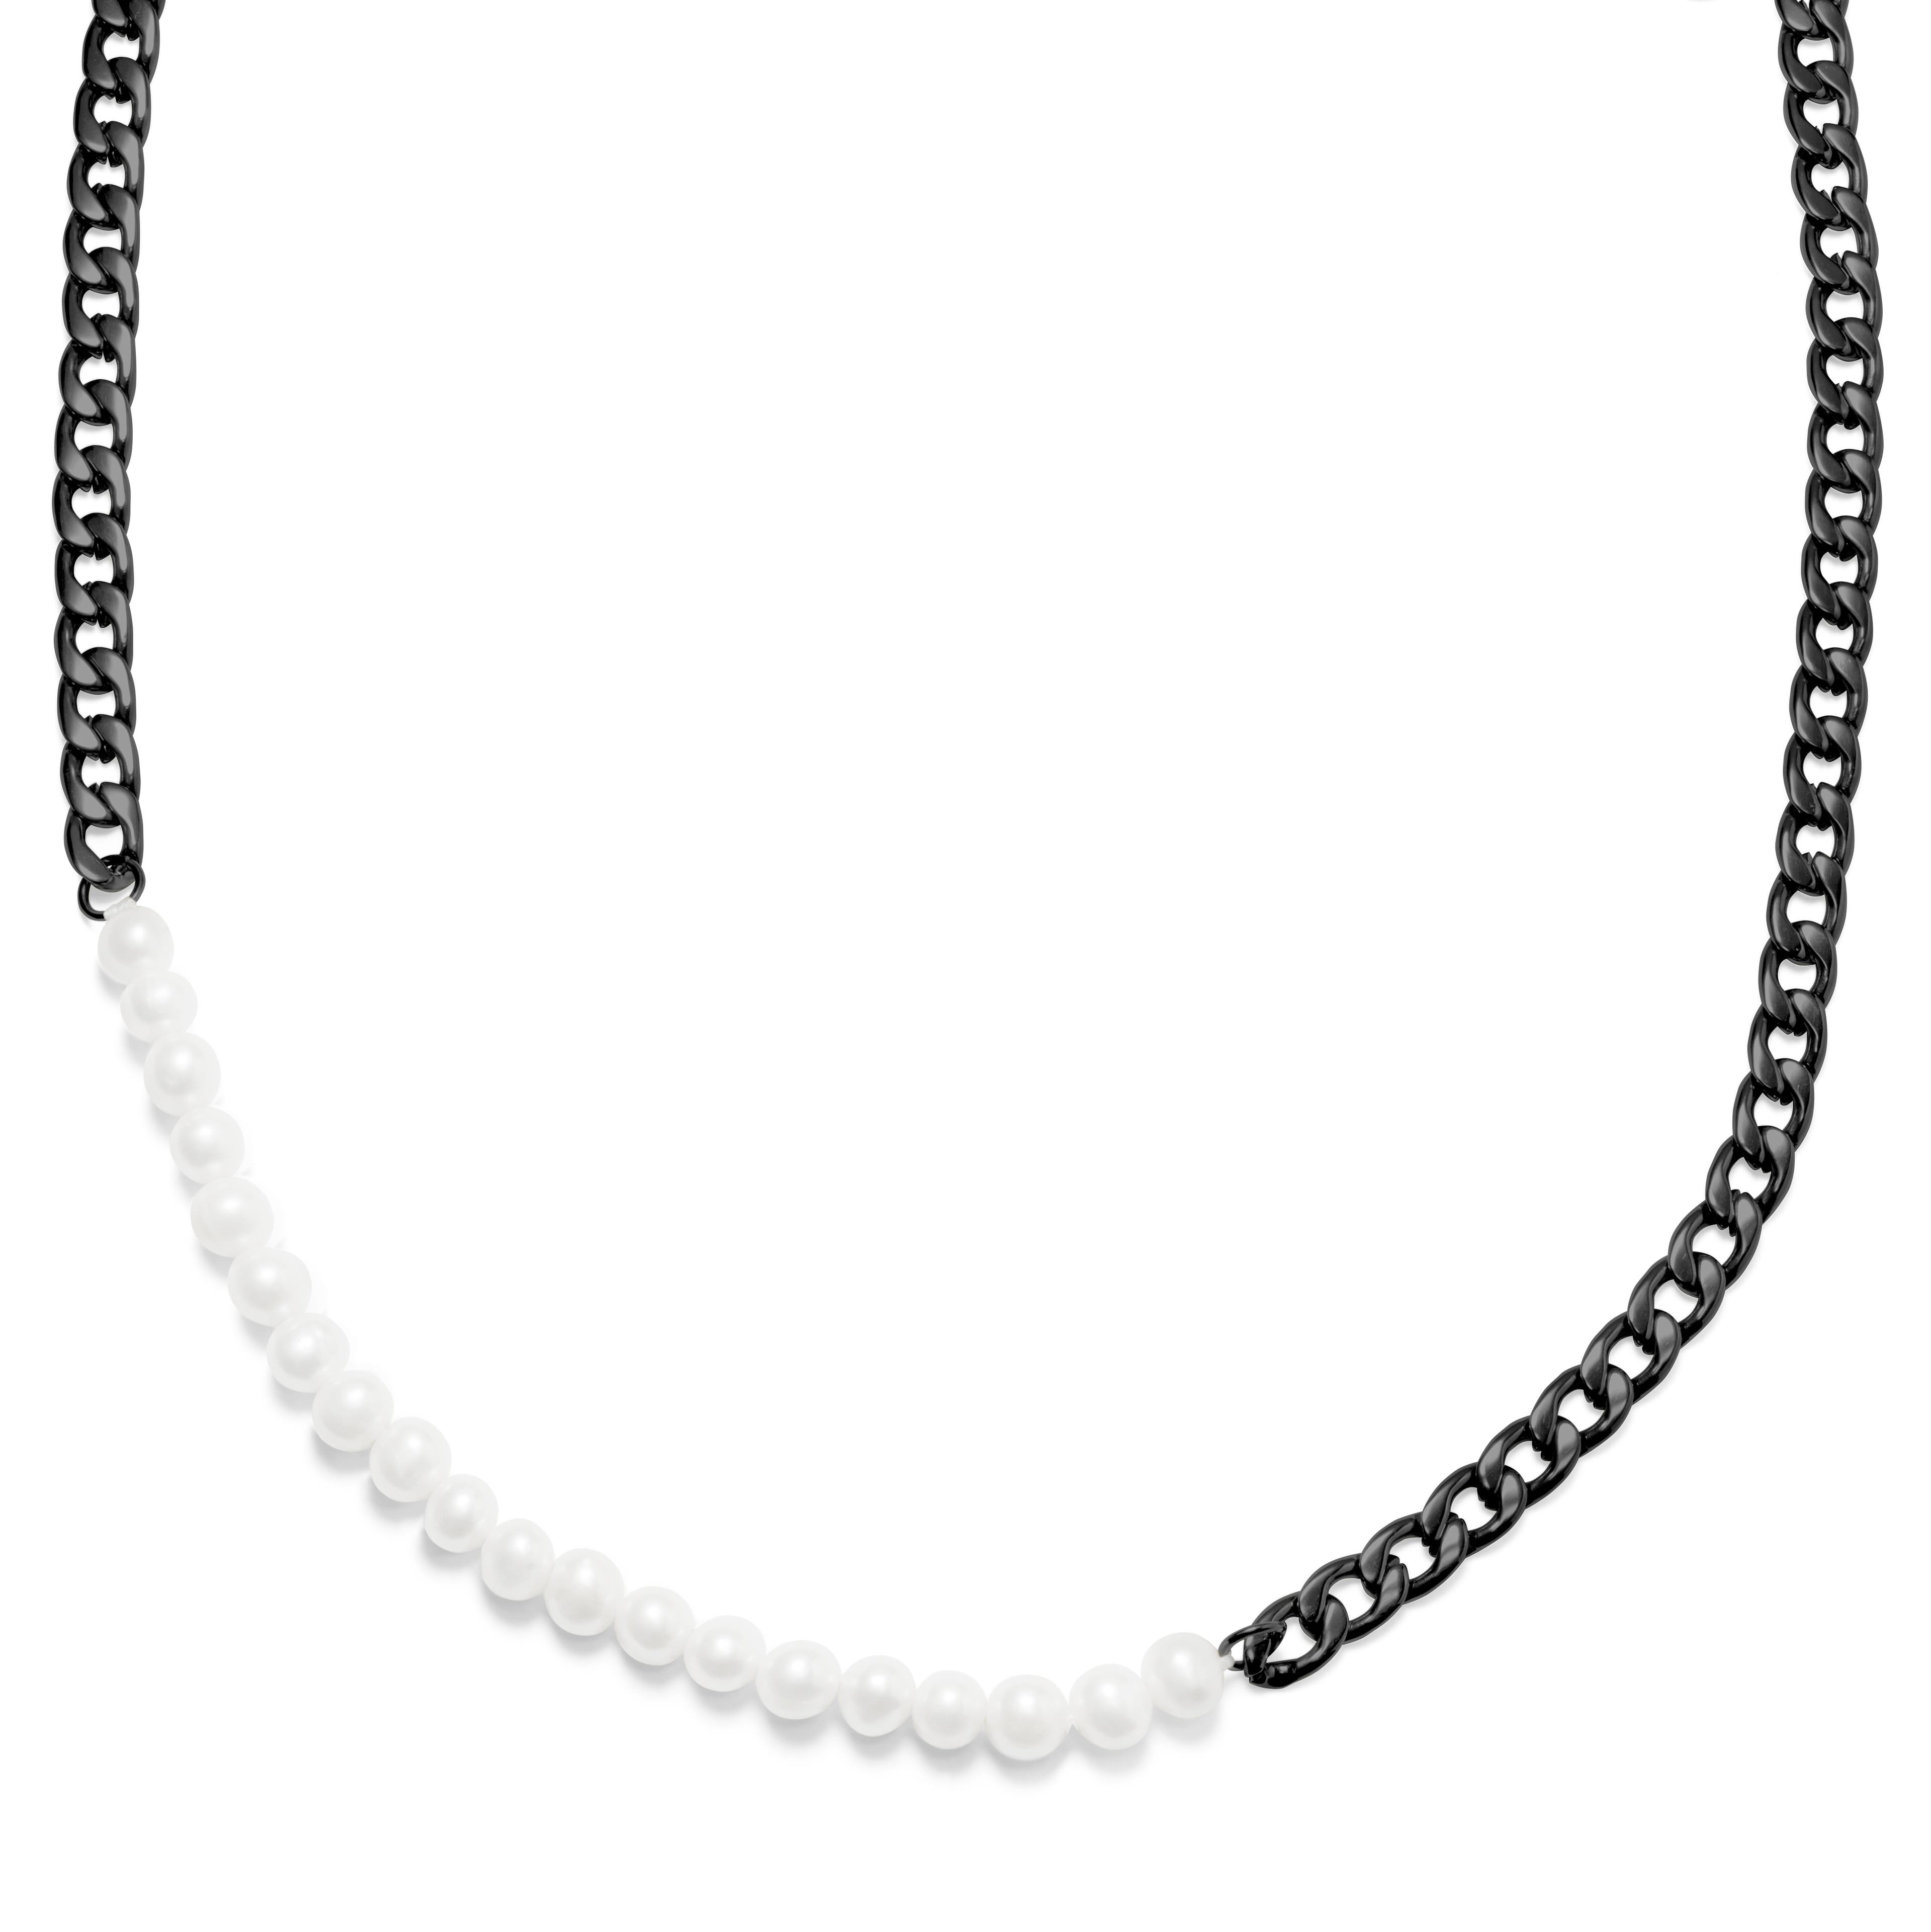 Charlie Amager článkový náhrdelník v barvě gunmetal s perličkami  